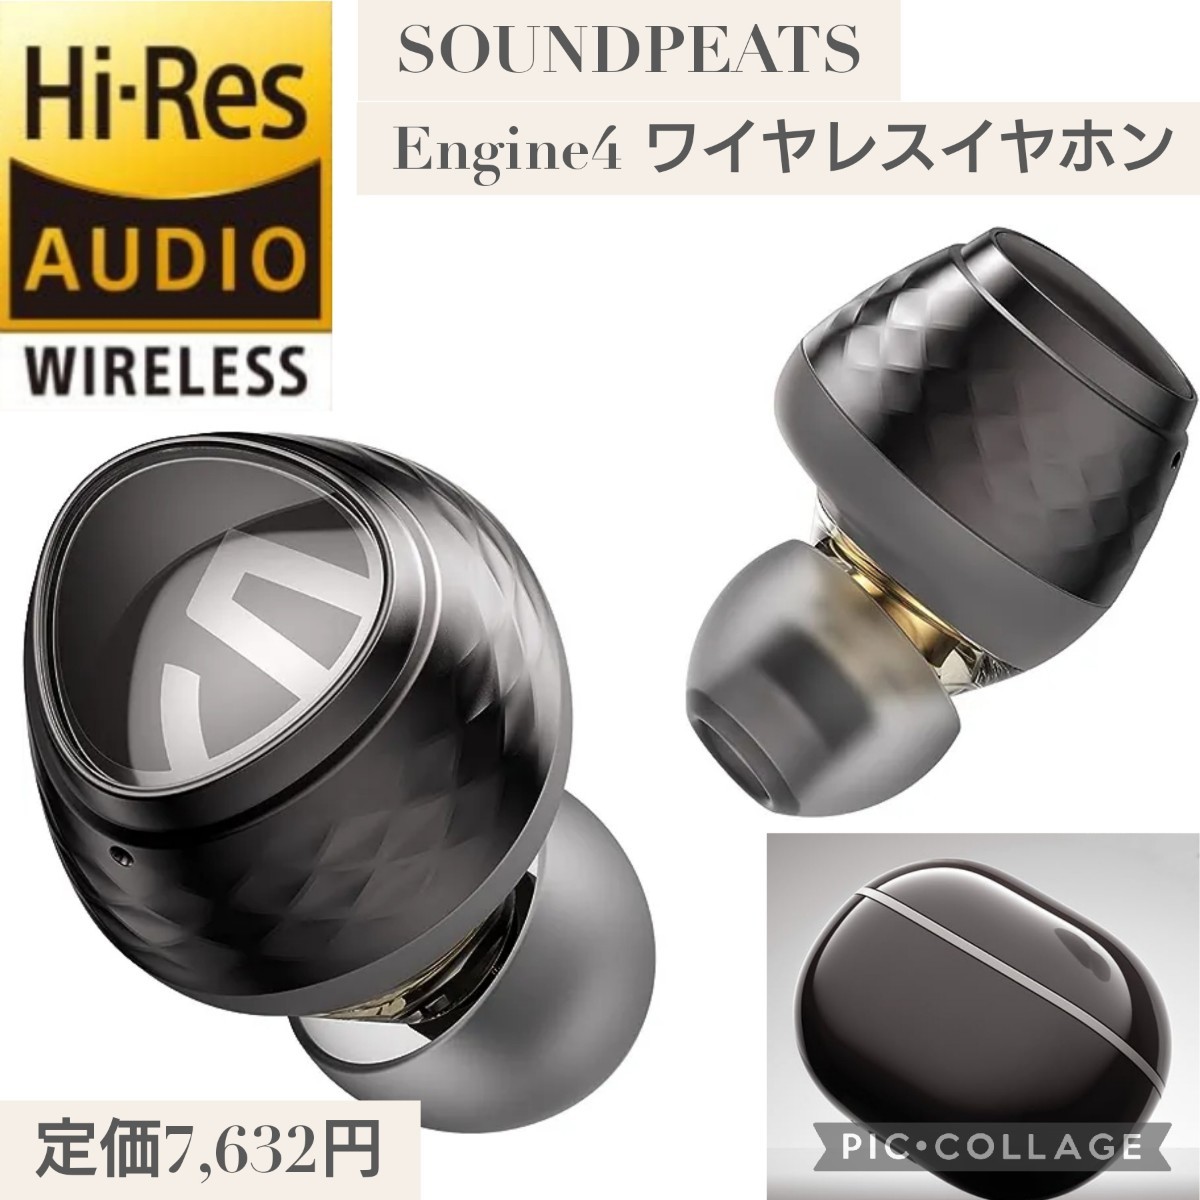 SOUNDPEATS Engine4 ワイヤレスイヤホン LDAC ハイレゾ